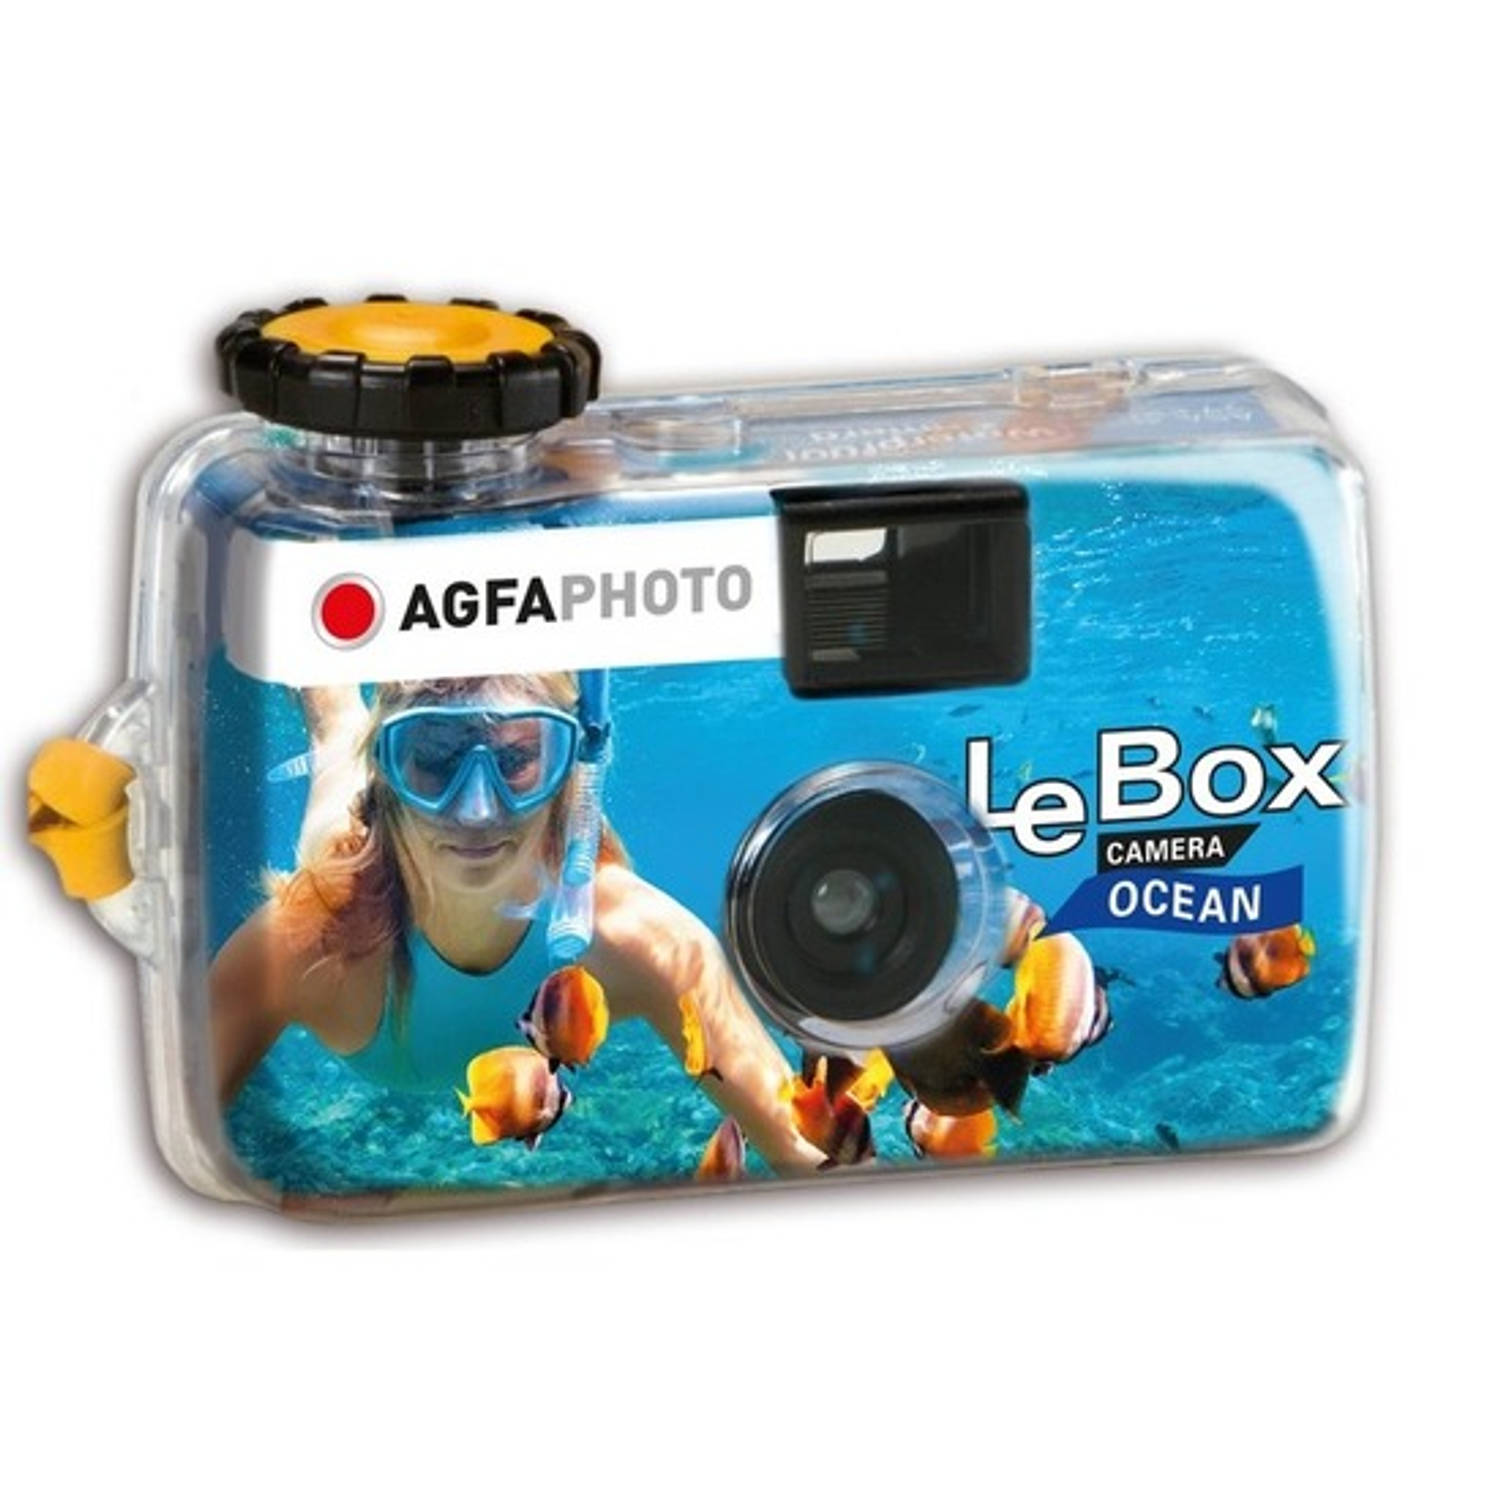 3x Wegwerp onderwater cameras voor 27 kleuren fotos Vakantiefotos weggooi cameras Duiken-zwemmen